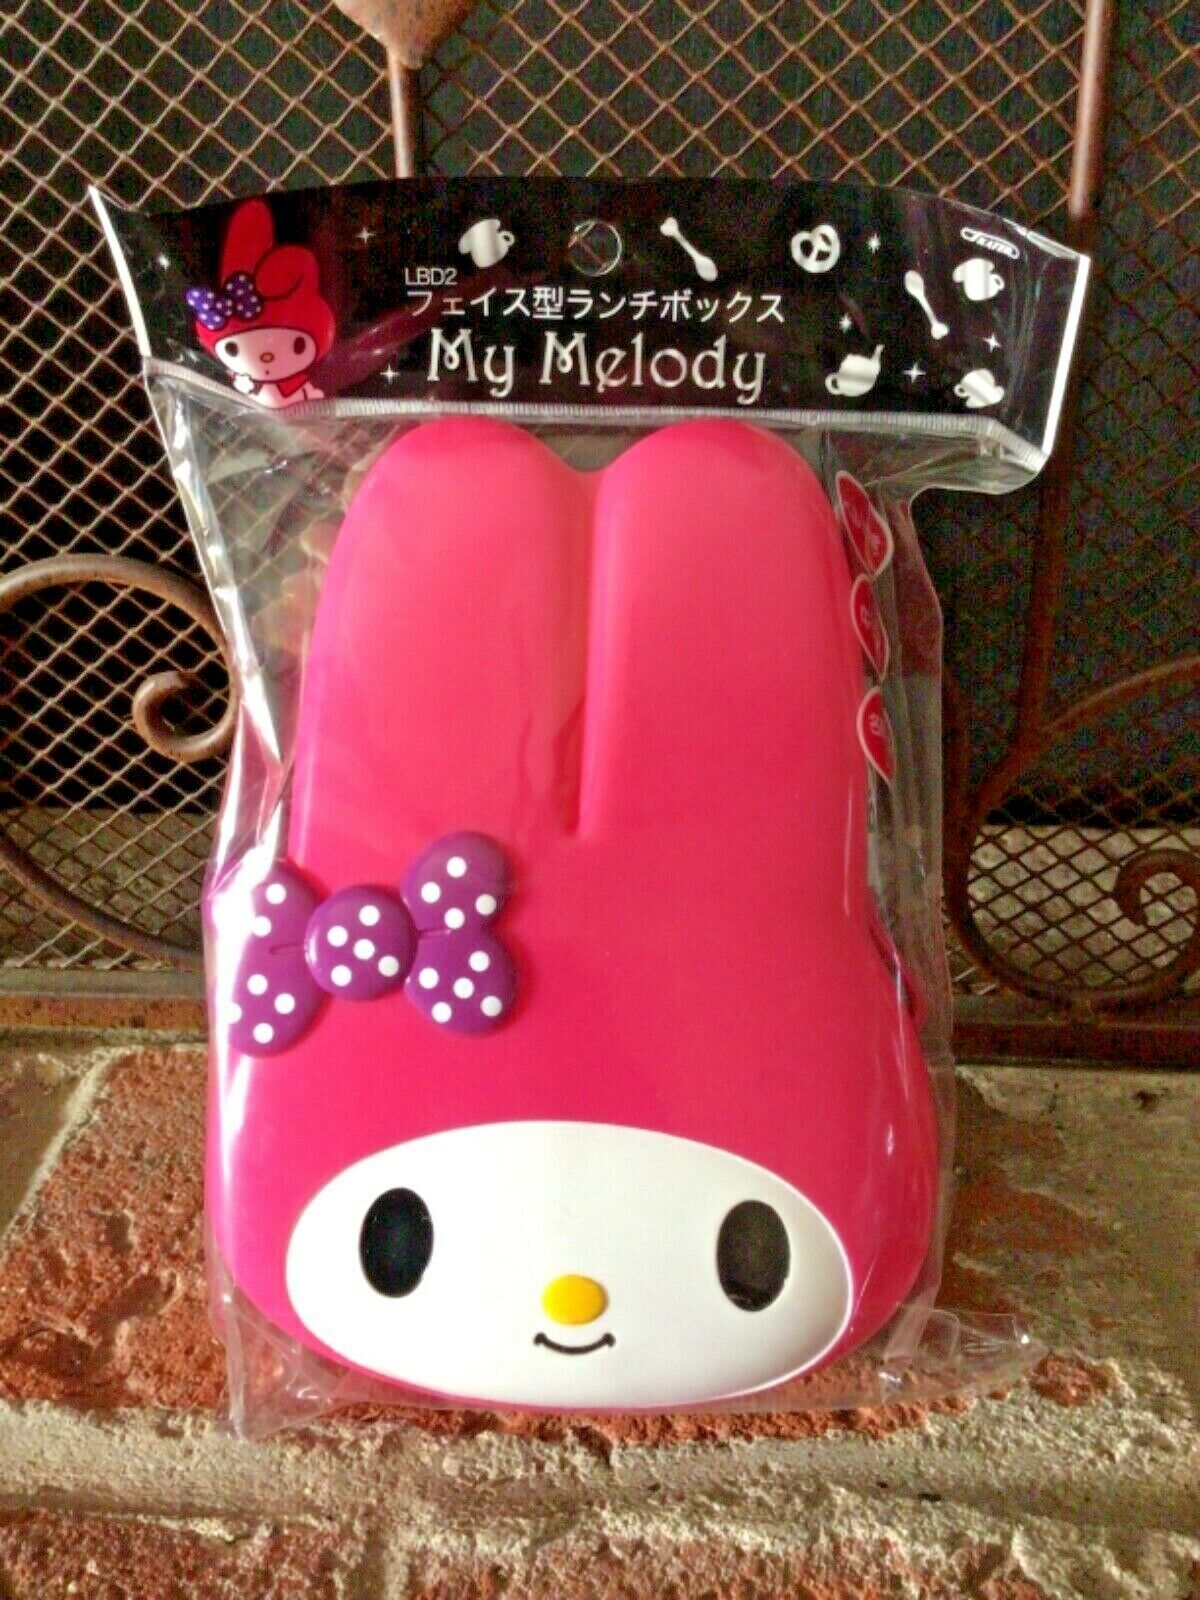 日本 Sanrio My Melody Bento Box Sold In Japan Only! SO CUTE! My Melody 午餐盒 旋律便當盒